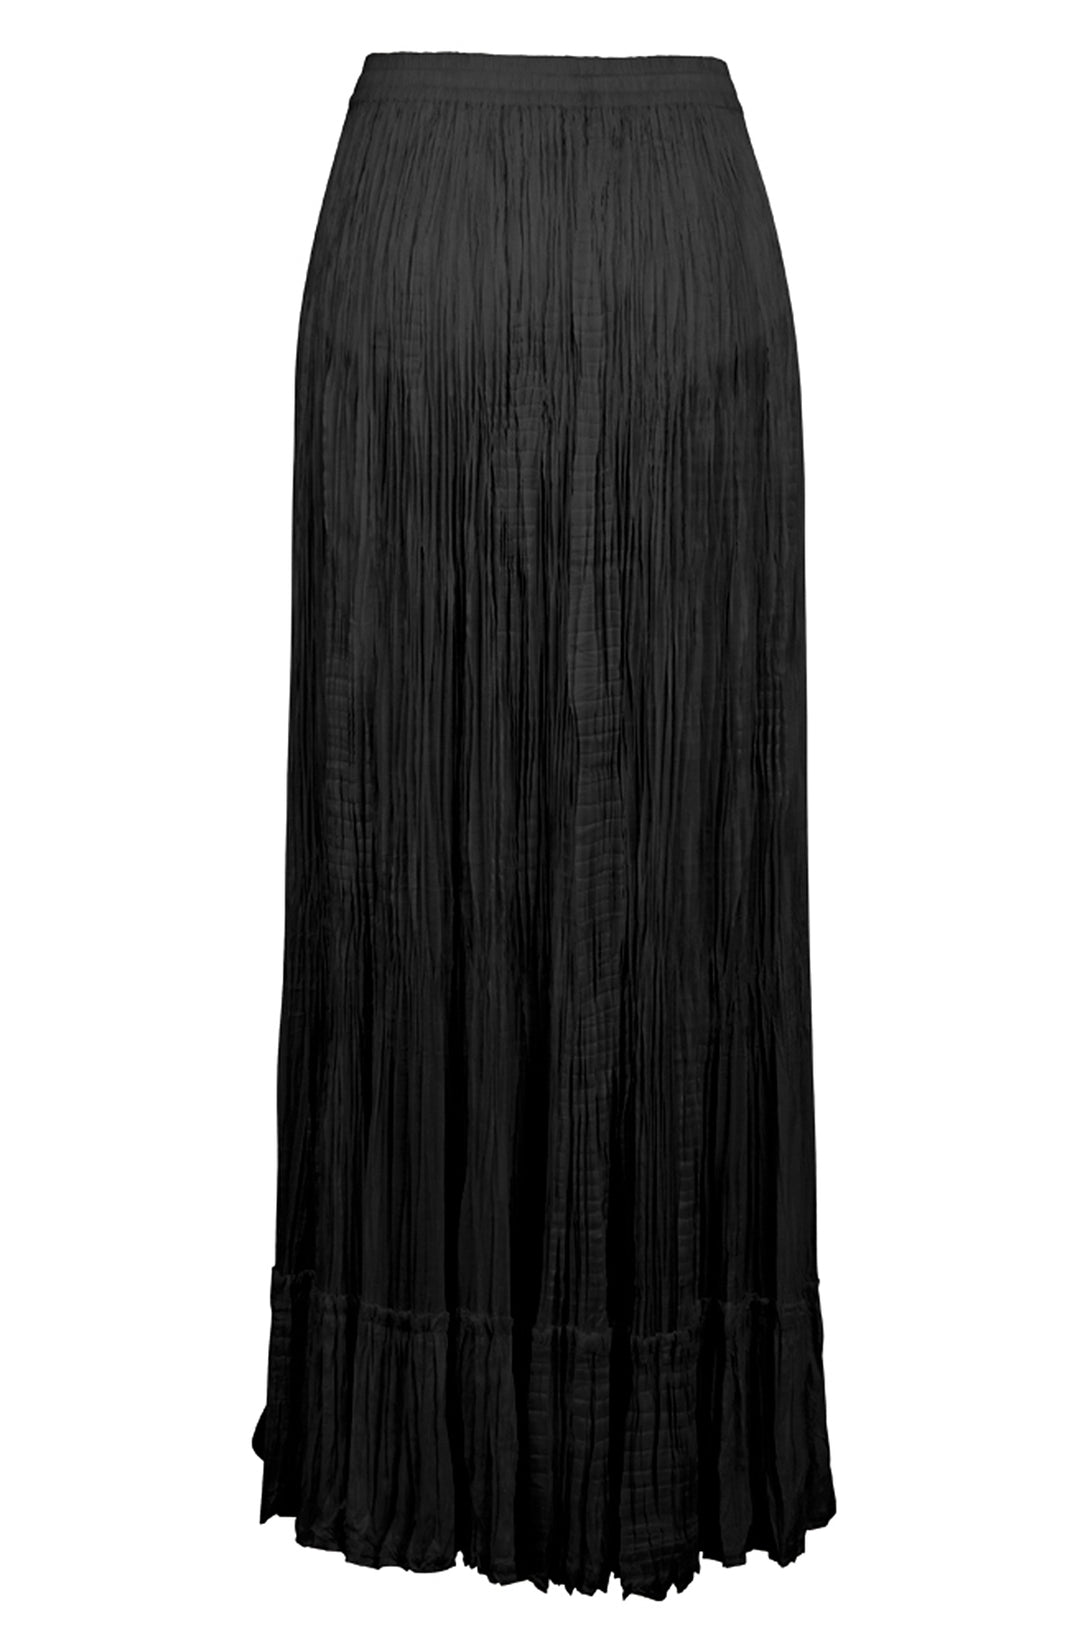 Guinevere Bridgerton Black Skirt 3